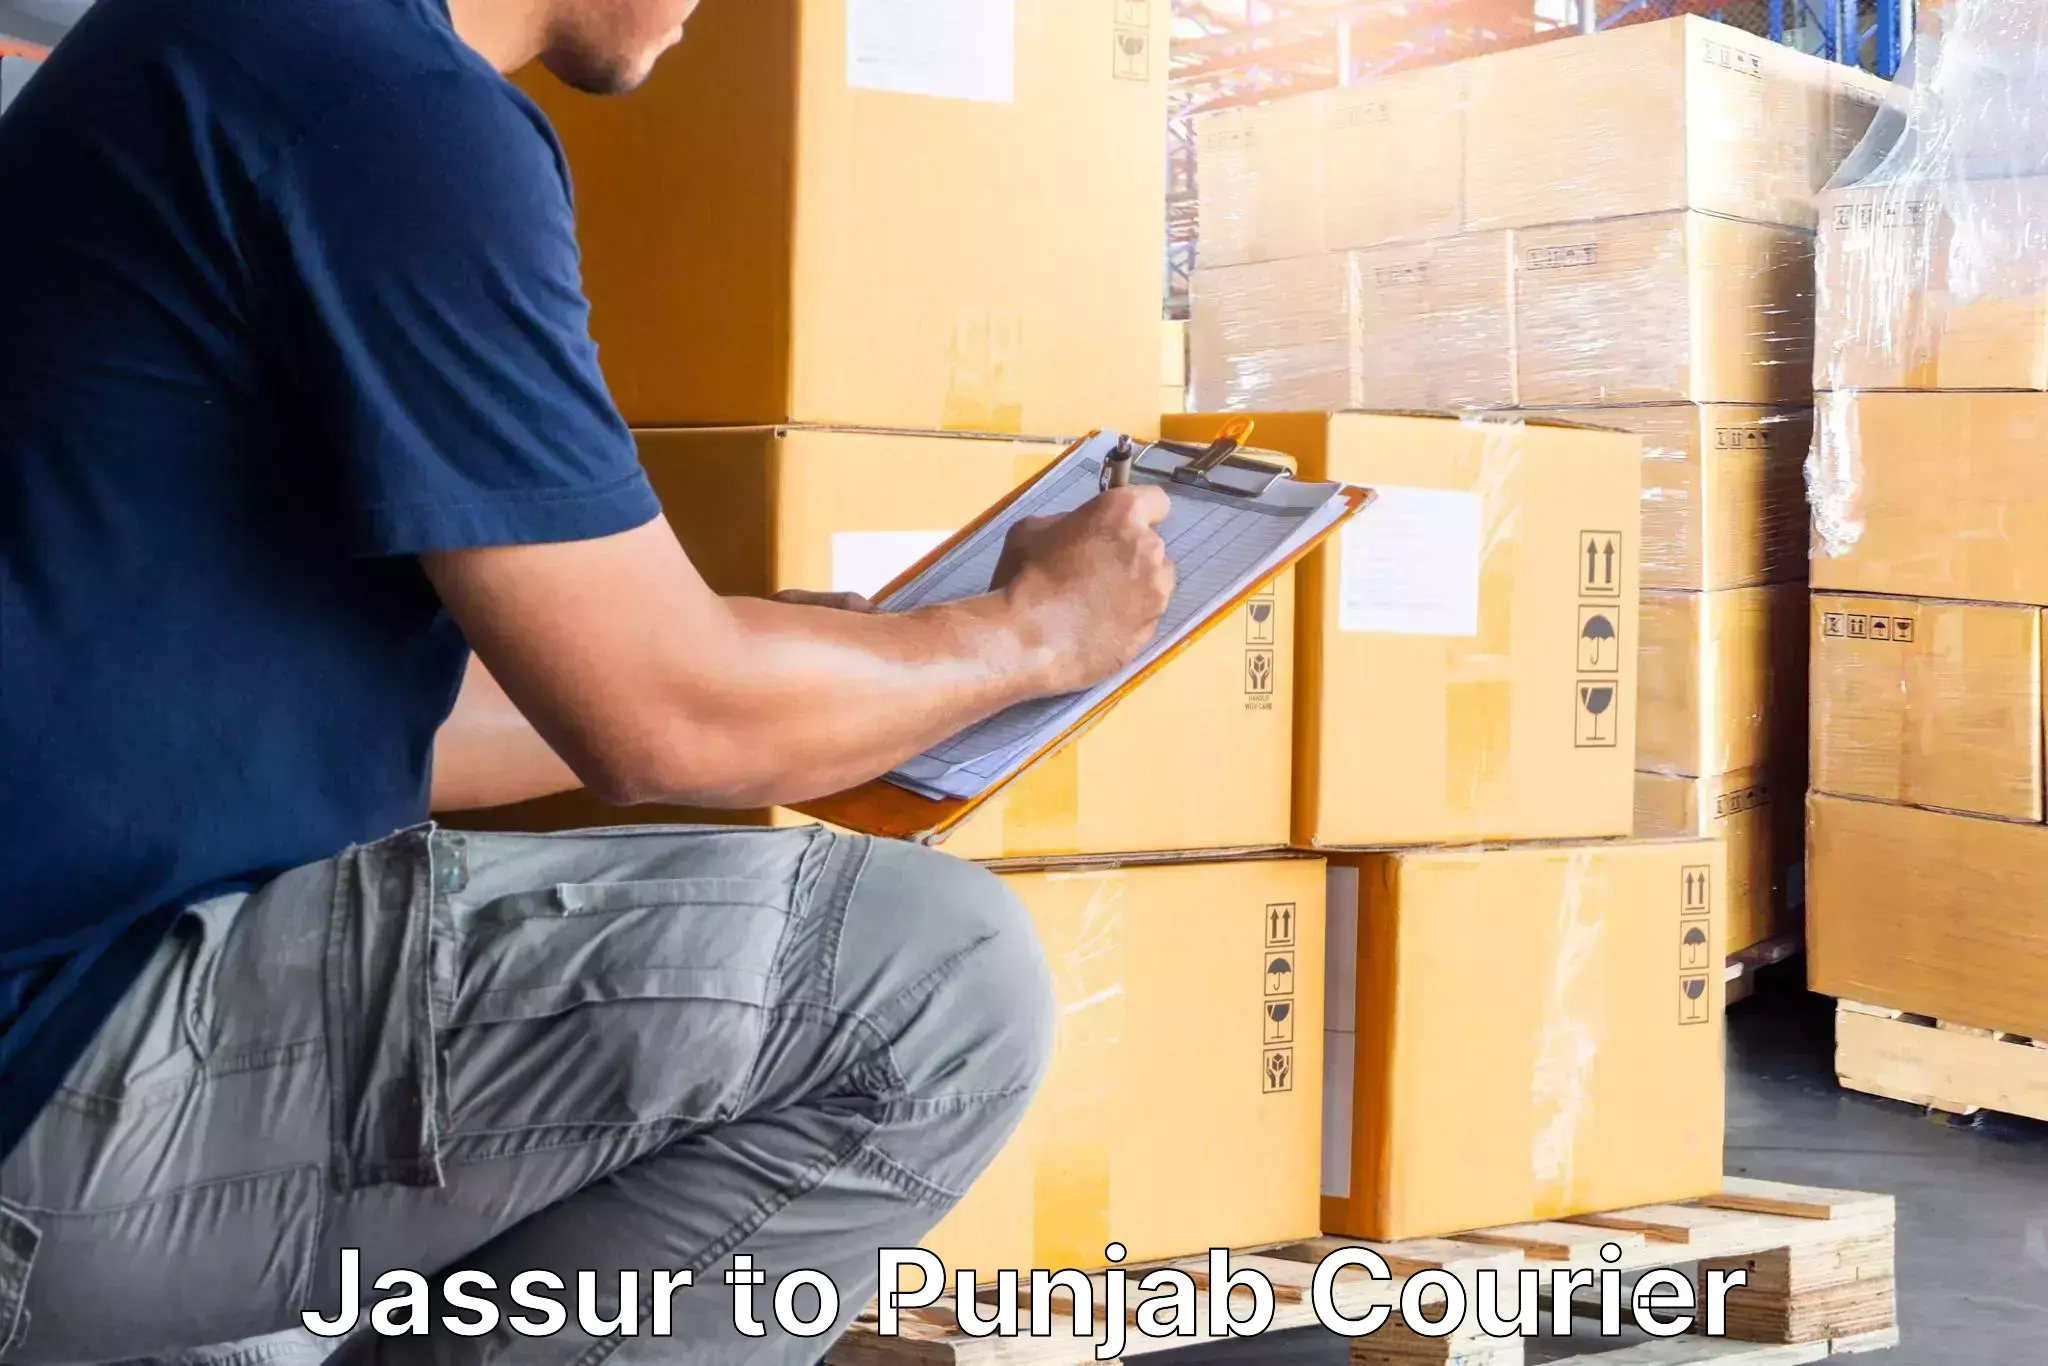 Furniture delivery service Jassur to Central University of Punjab Bathinda